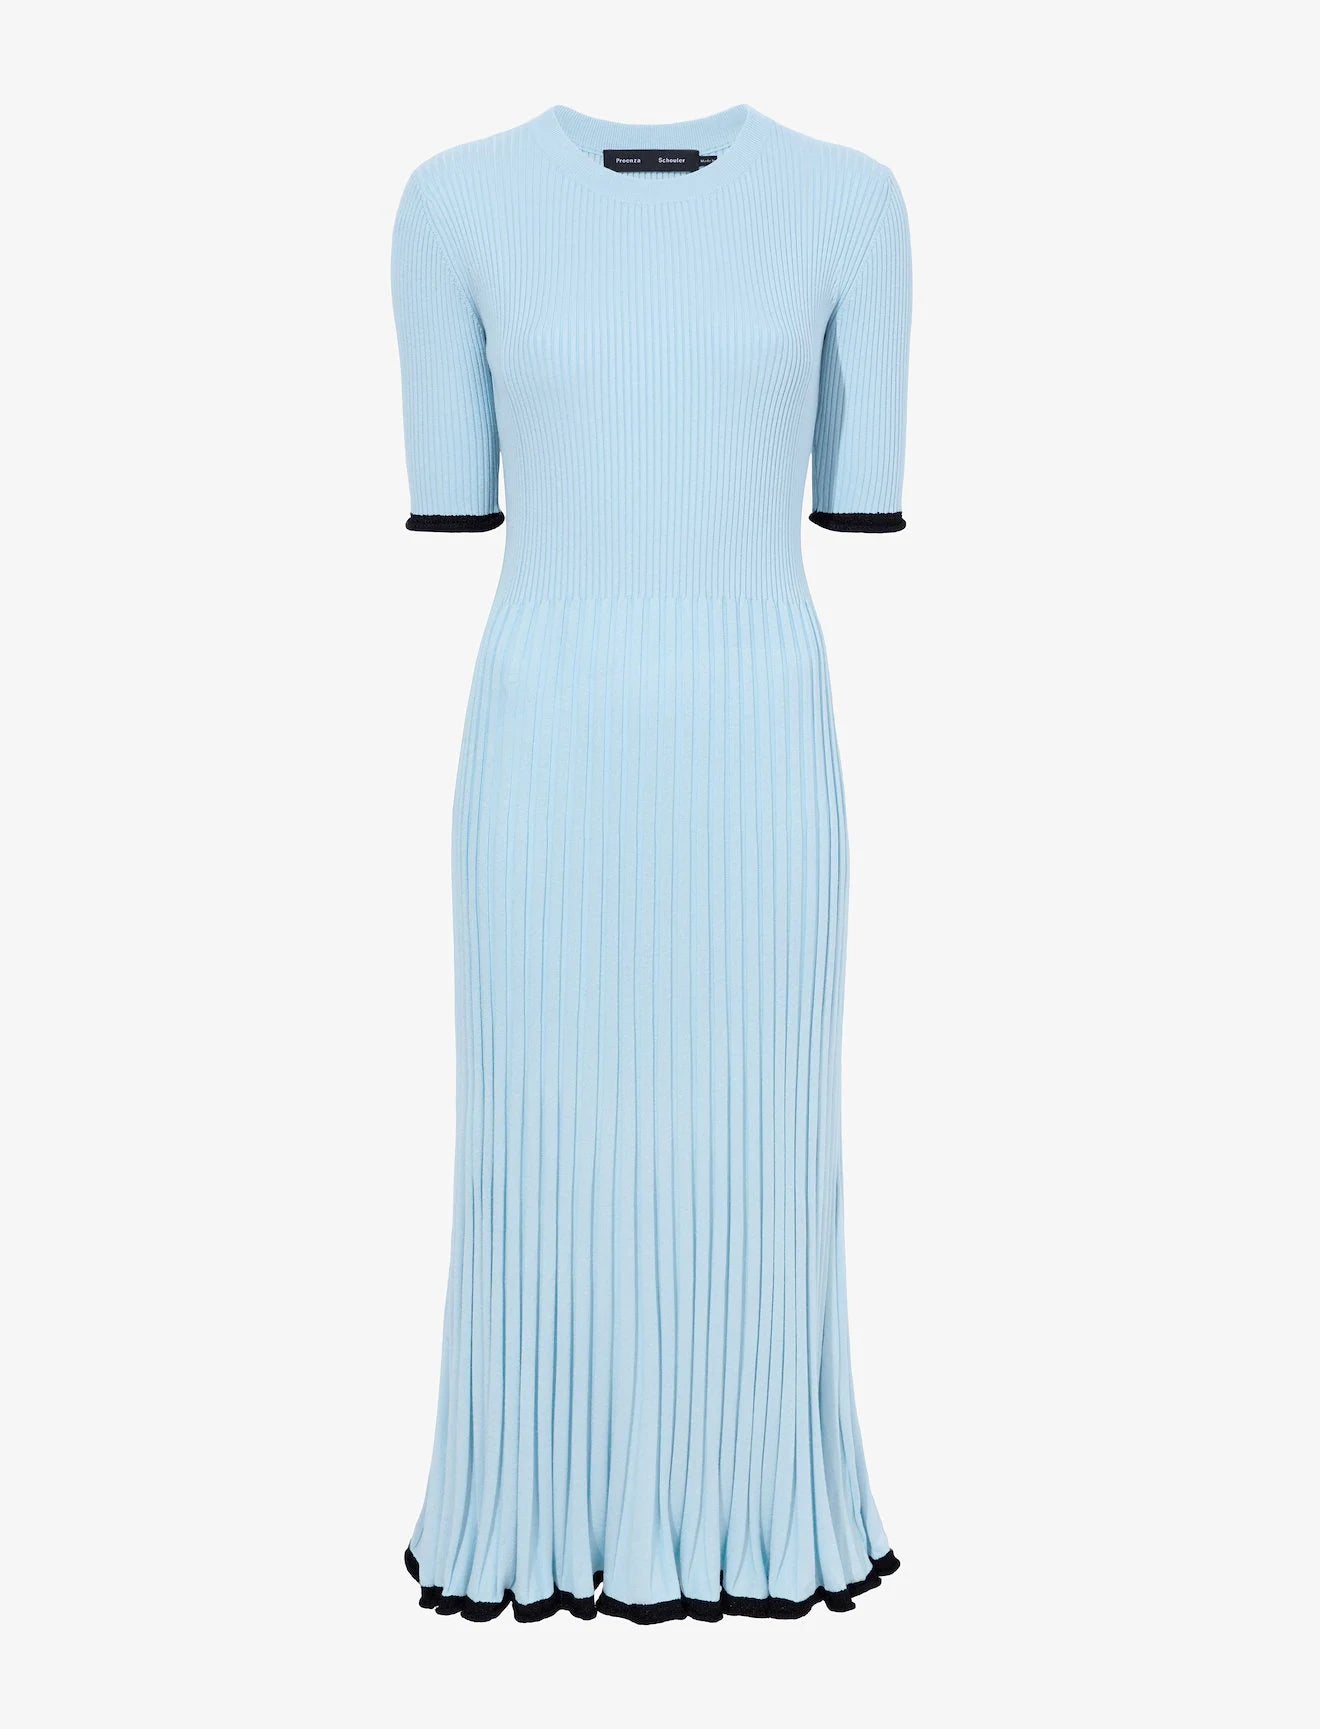 Silk Cashmere Rib Knit Dress - Light Blue